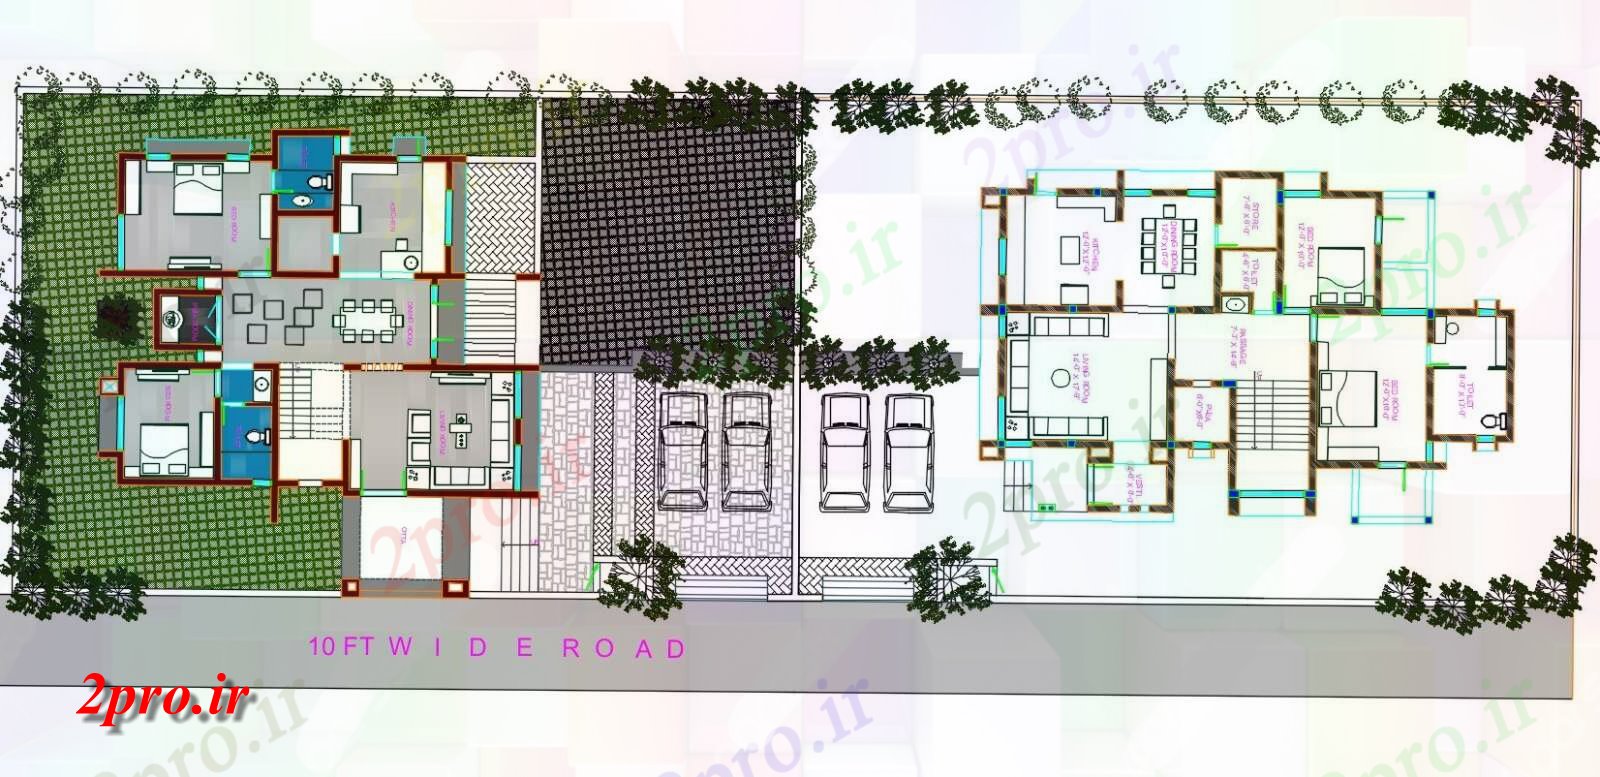 دانلود نقشه خانه های کوچک ، نگهبانی ، سازمانی - طرحی ویلایی معماری با 2 گزینه های مختلف 10 در 17 متر (کد155227)